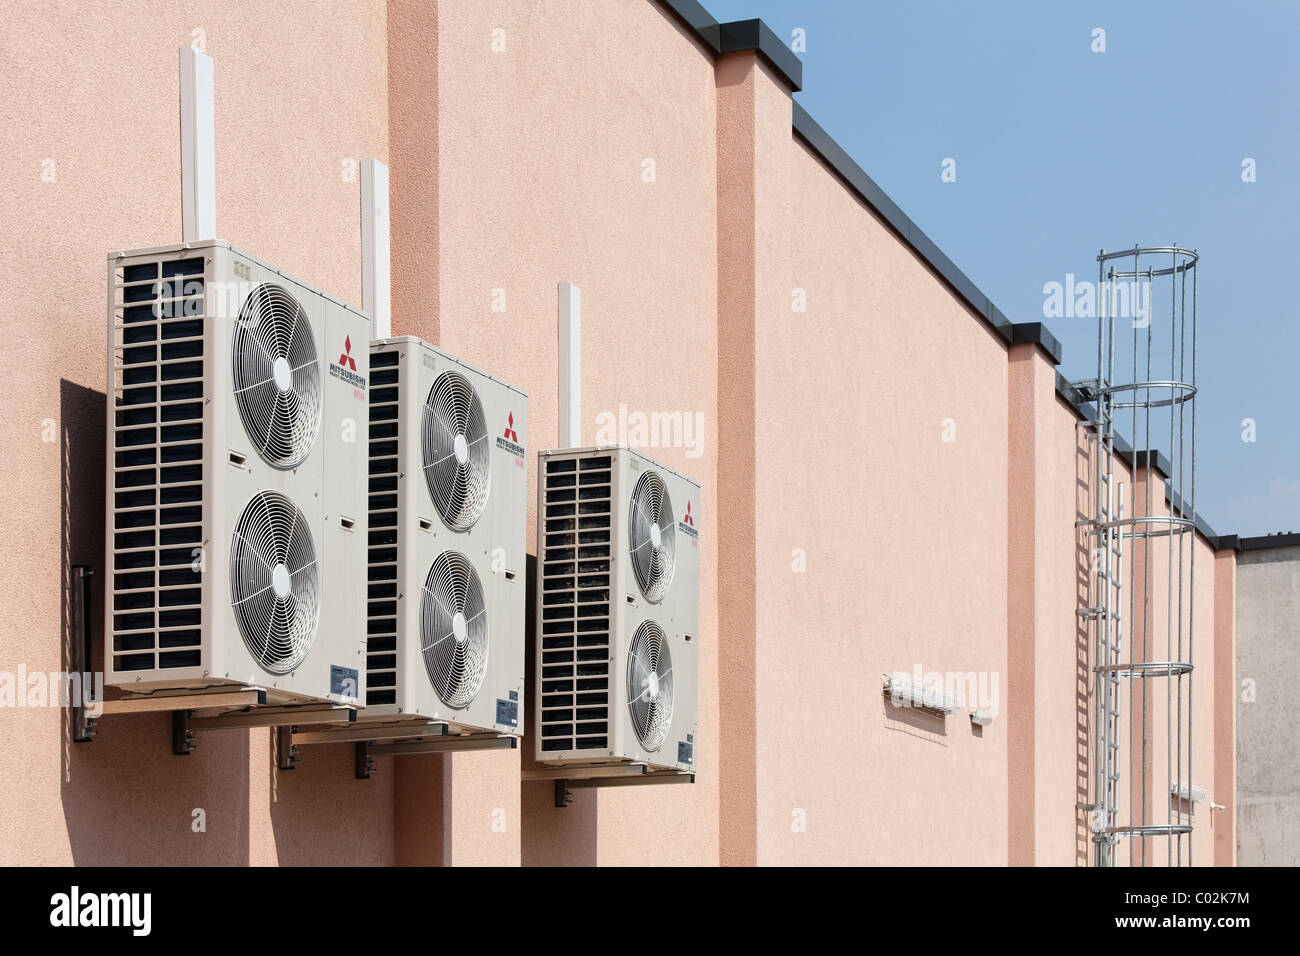 Außengeräte der Split-System Klimaanlagen in einem Supermarkt, Düsseldorf, Nordrhein-Westfalen, Deutschland, Europa Stockfoto